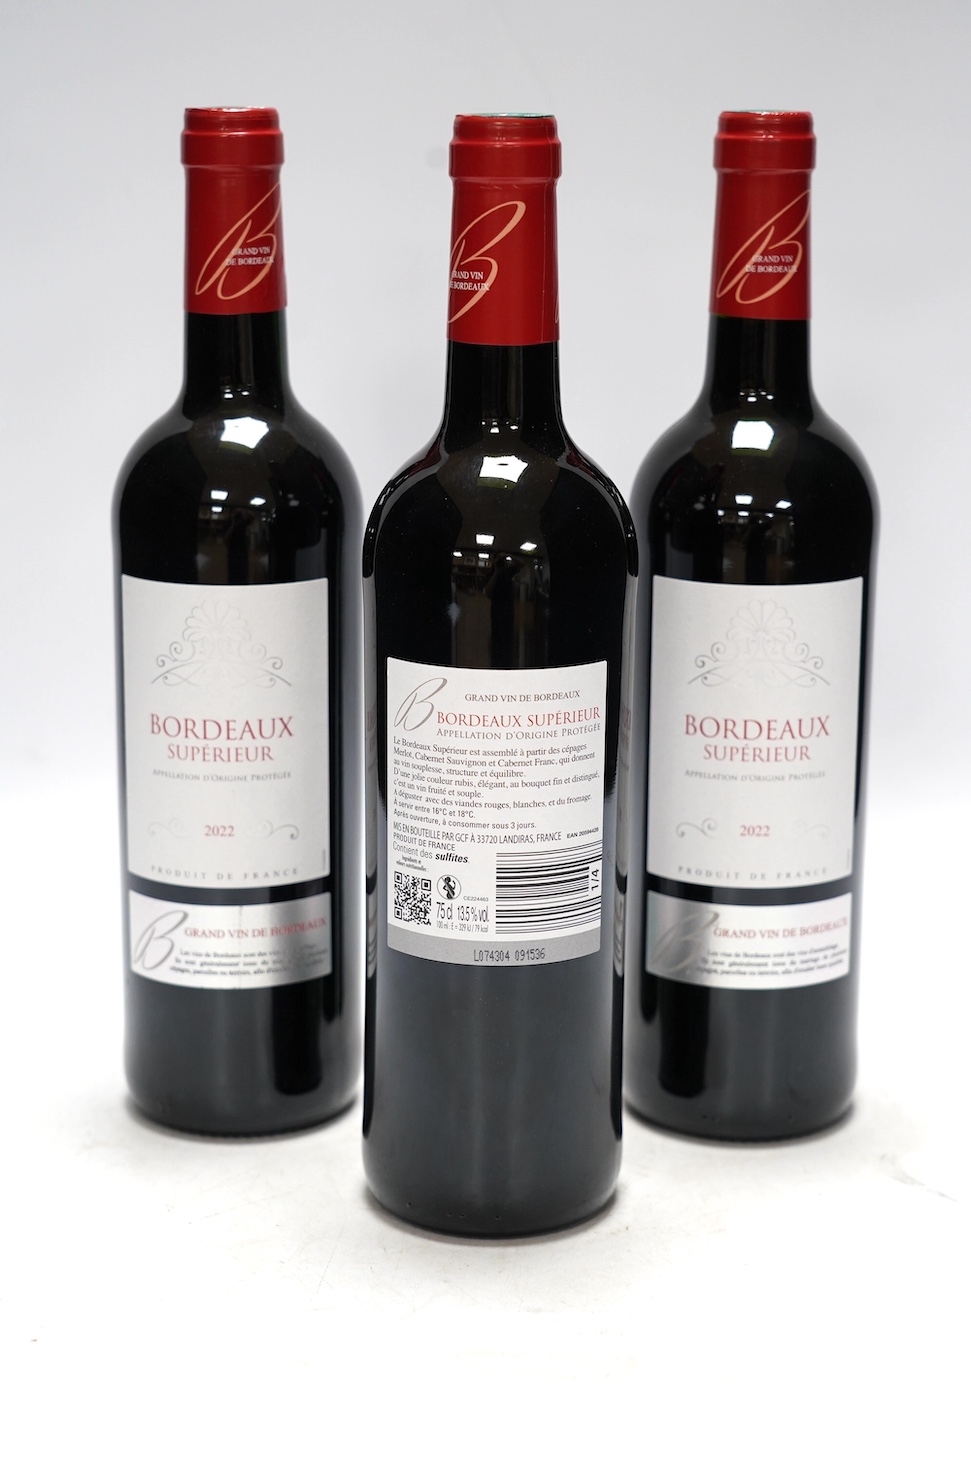 Twelve bottles of Bordeaux Superior, 2022. Condition - good